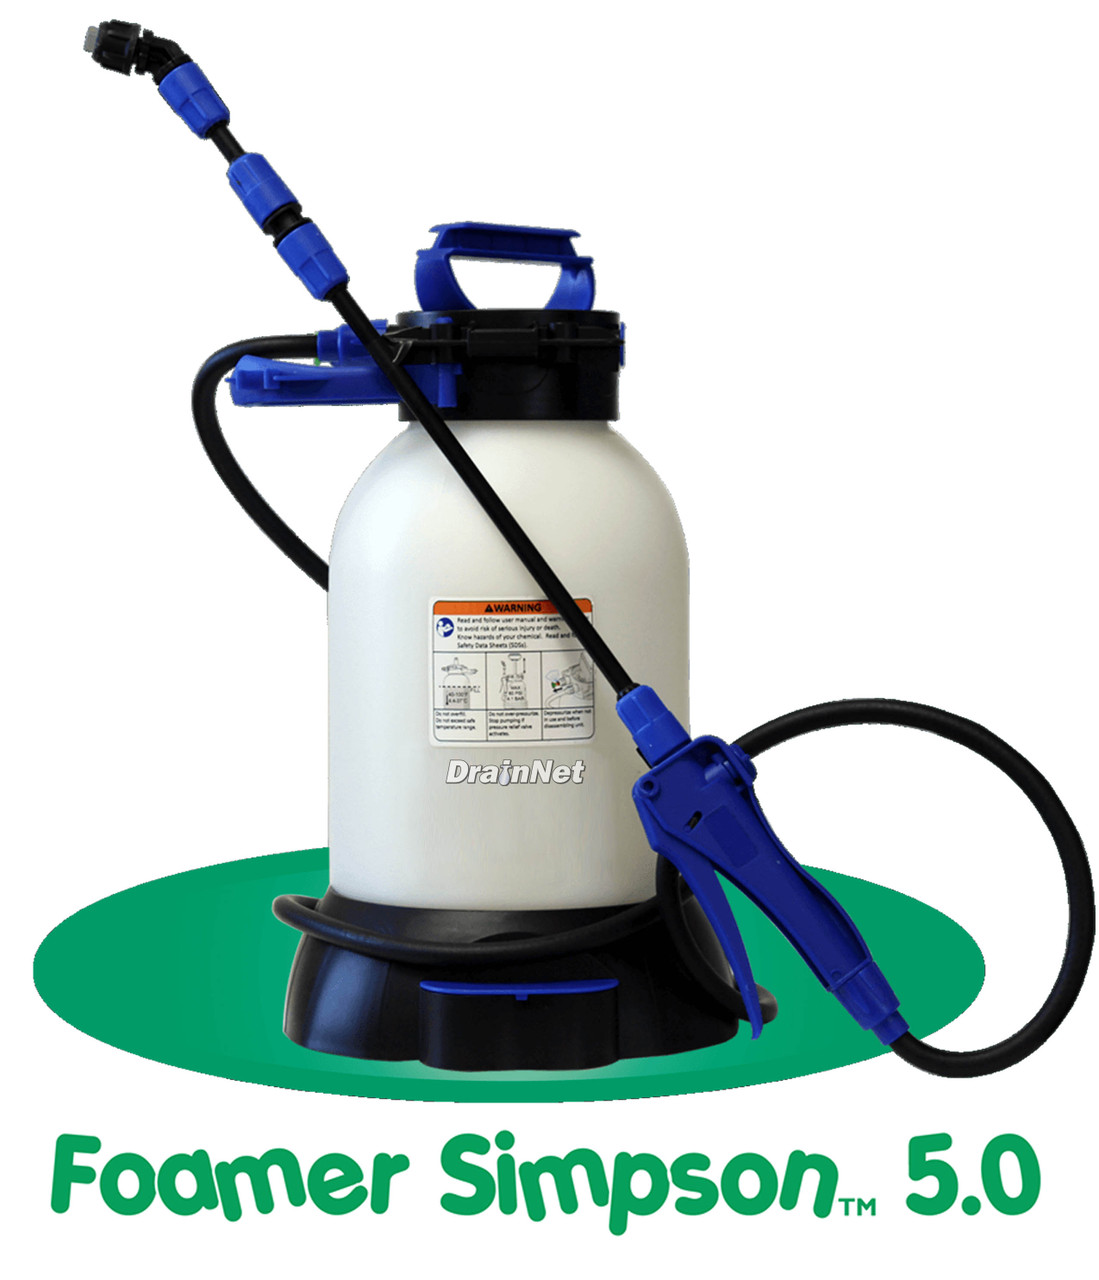 Foamer Simpson 5.0 Liter Pump-Up Foamer with 17 inch foam wand